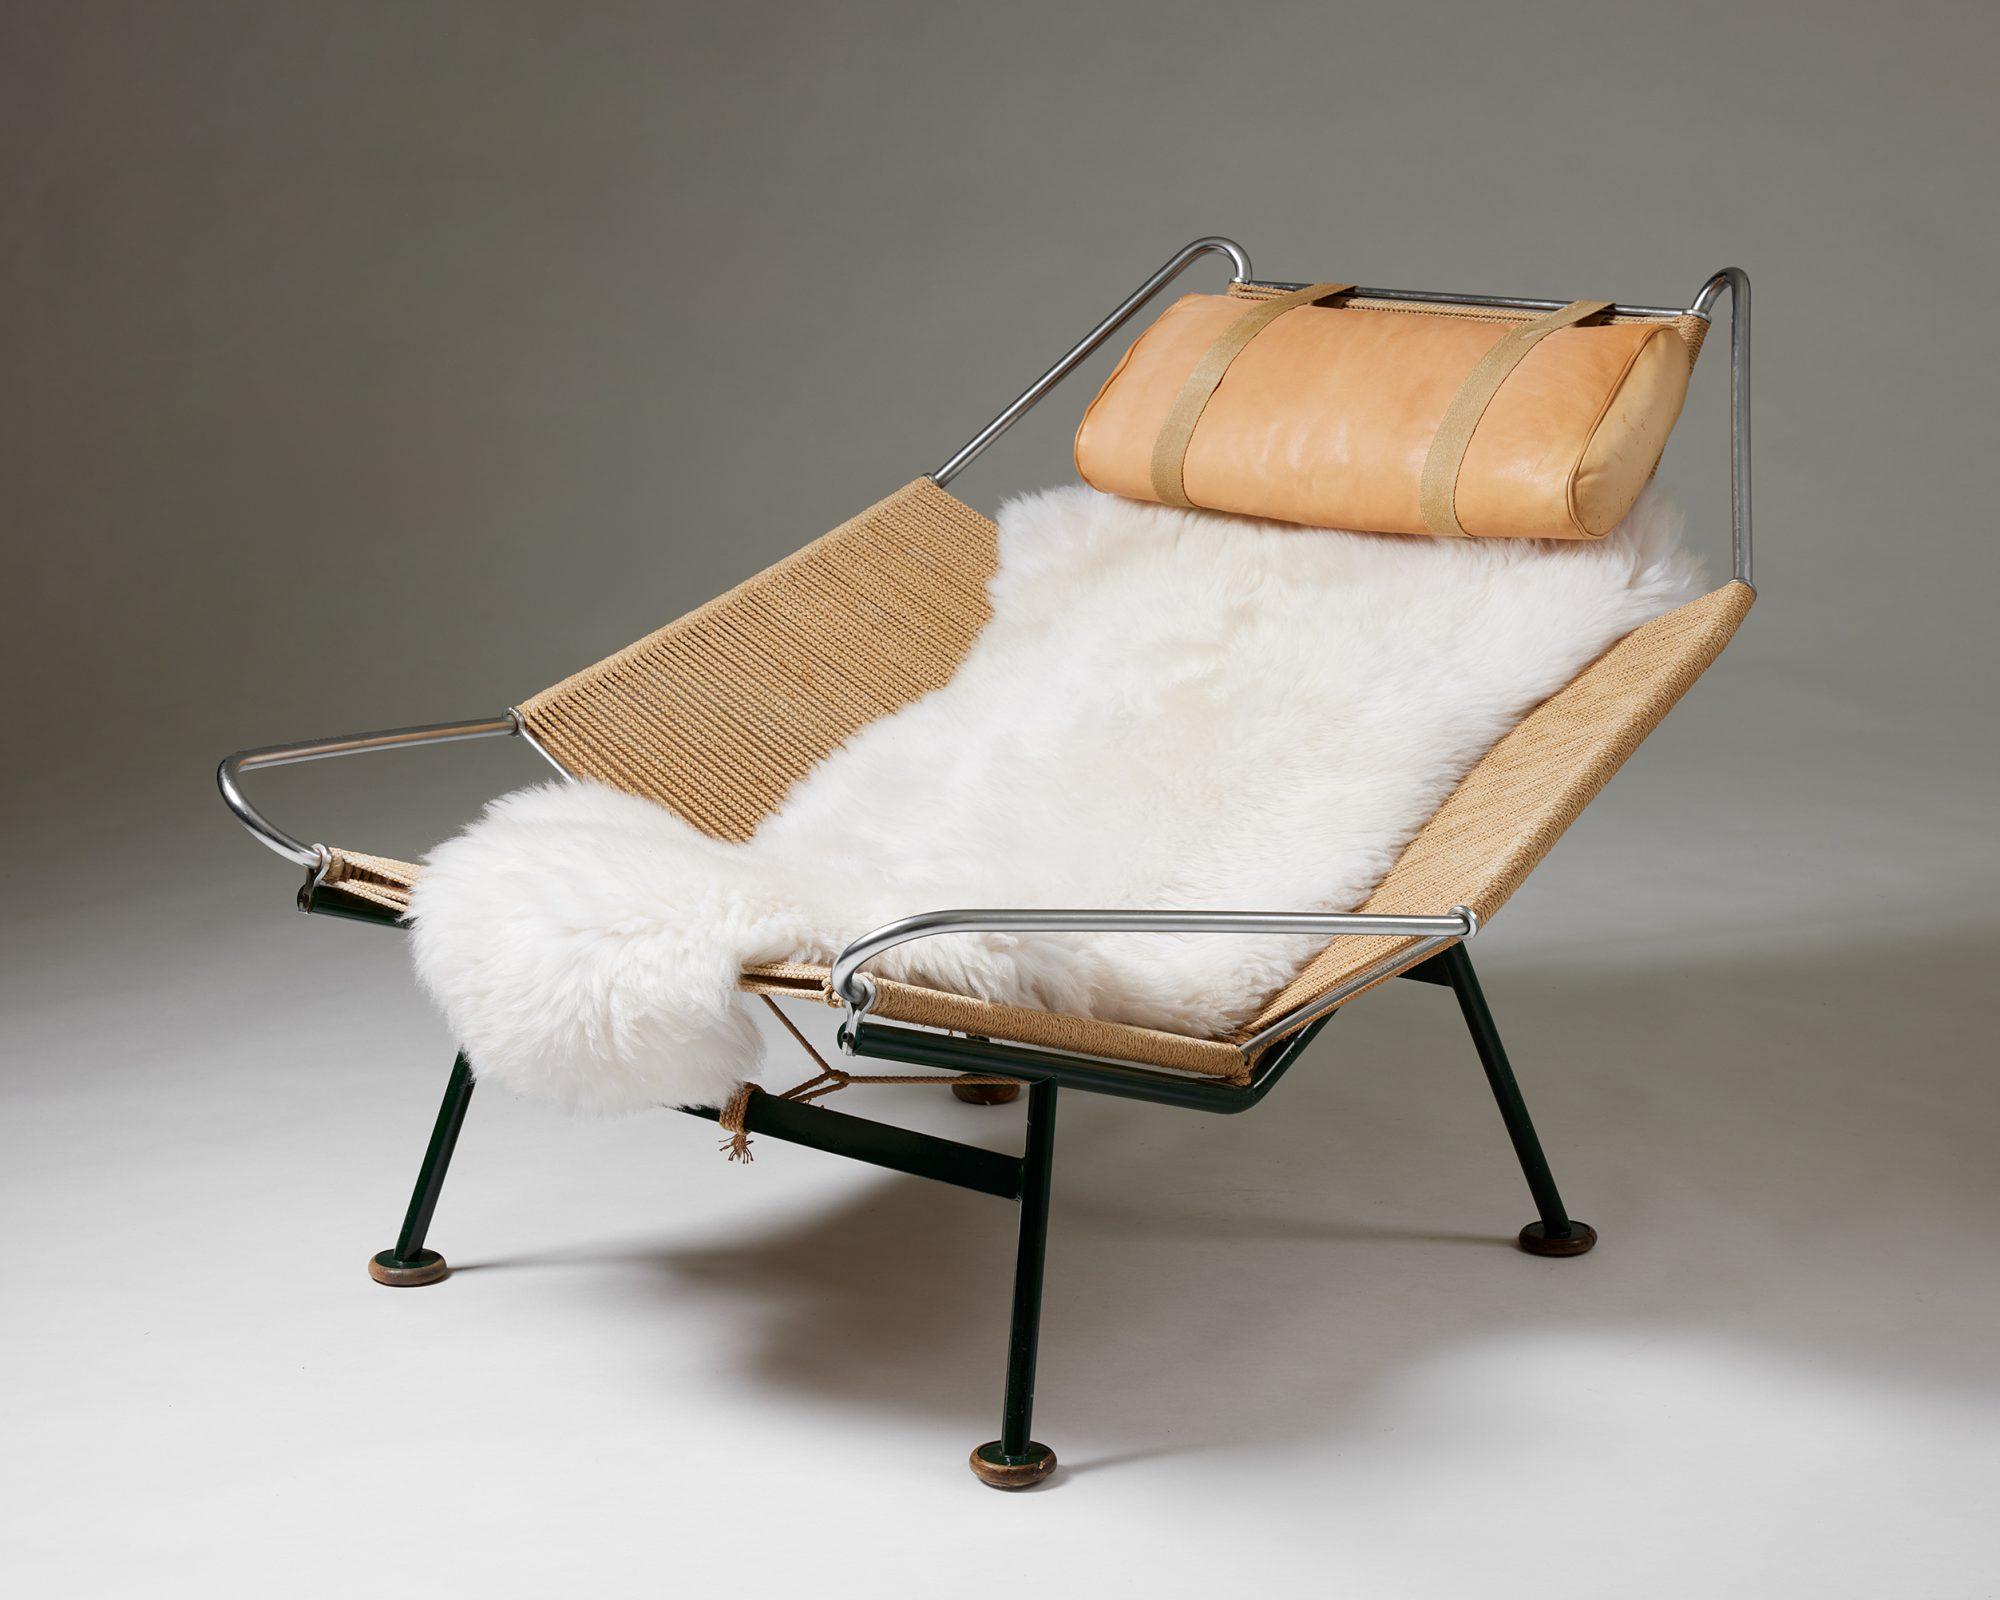 La chaise Flag Halyard Chair conçue par Hans J. Wegner pour GETAMA,
Danemark, 1950
Cadre en acier laqué, 